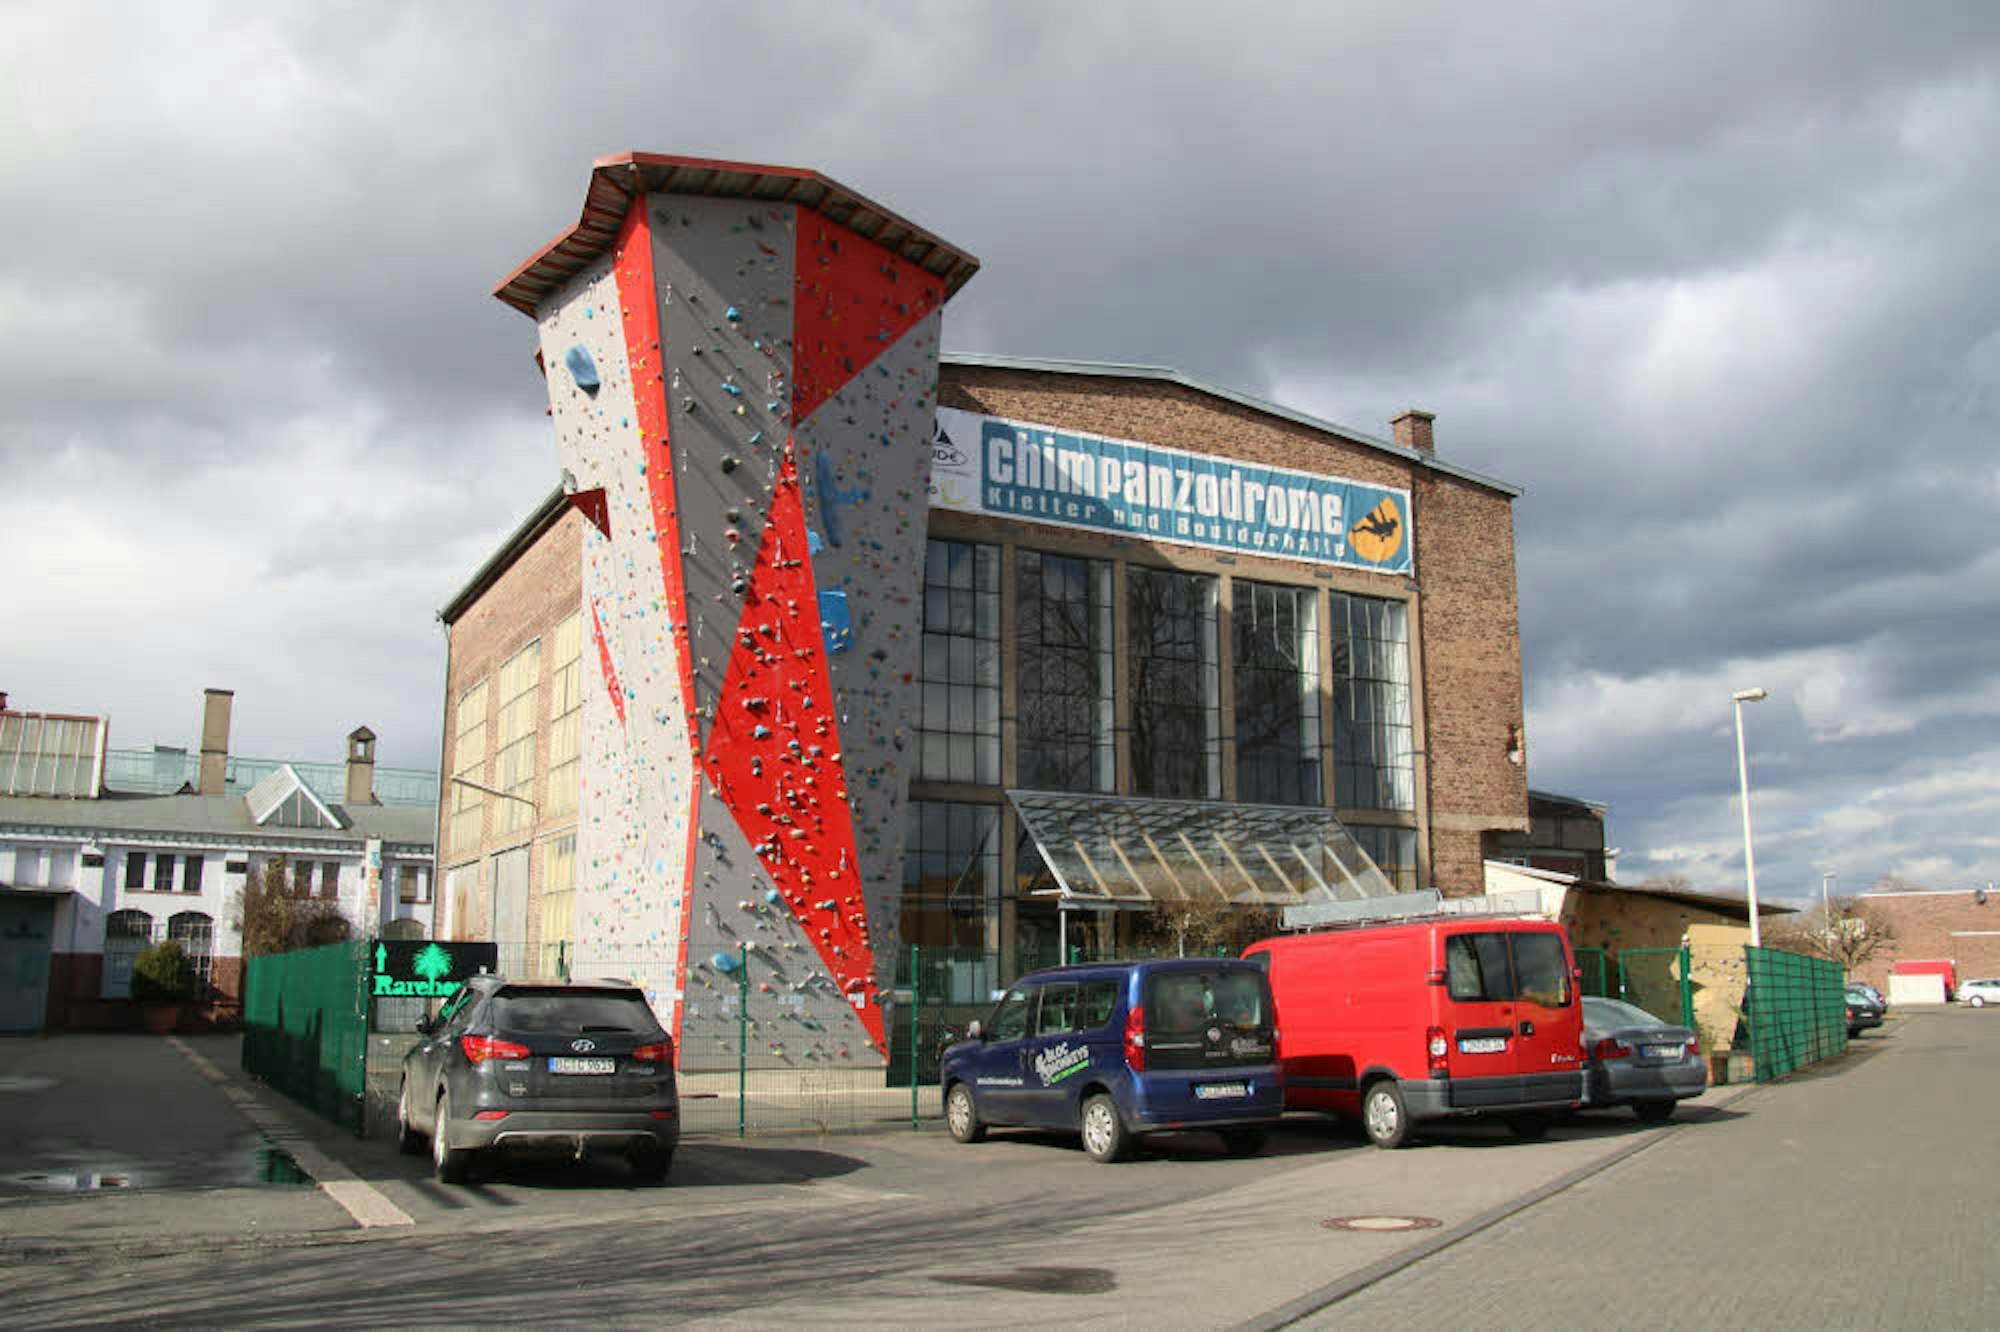 Das Chimpanzodorome soll an der Ernst-Heinrich-Geist-Straße wieder aufgebaut werden.